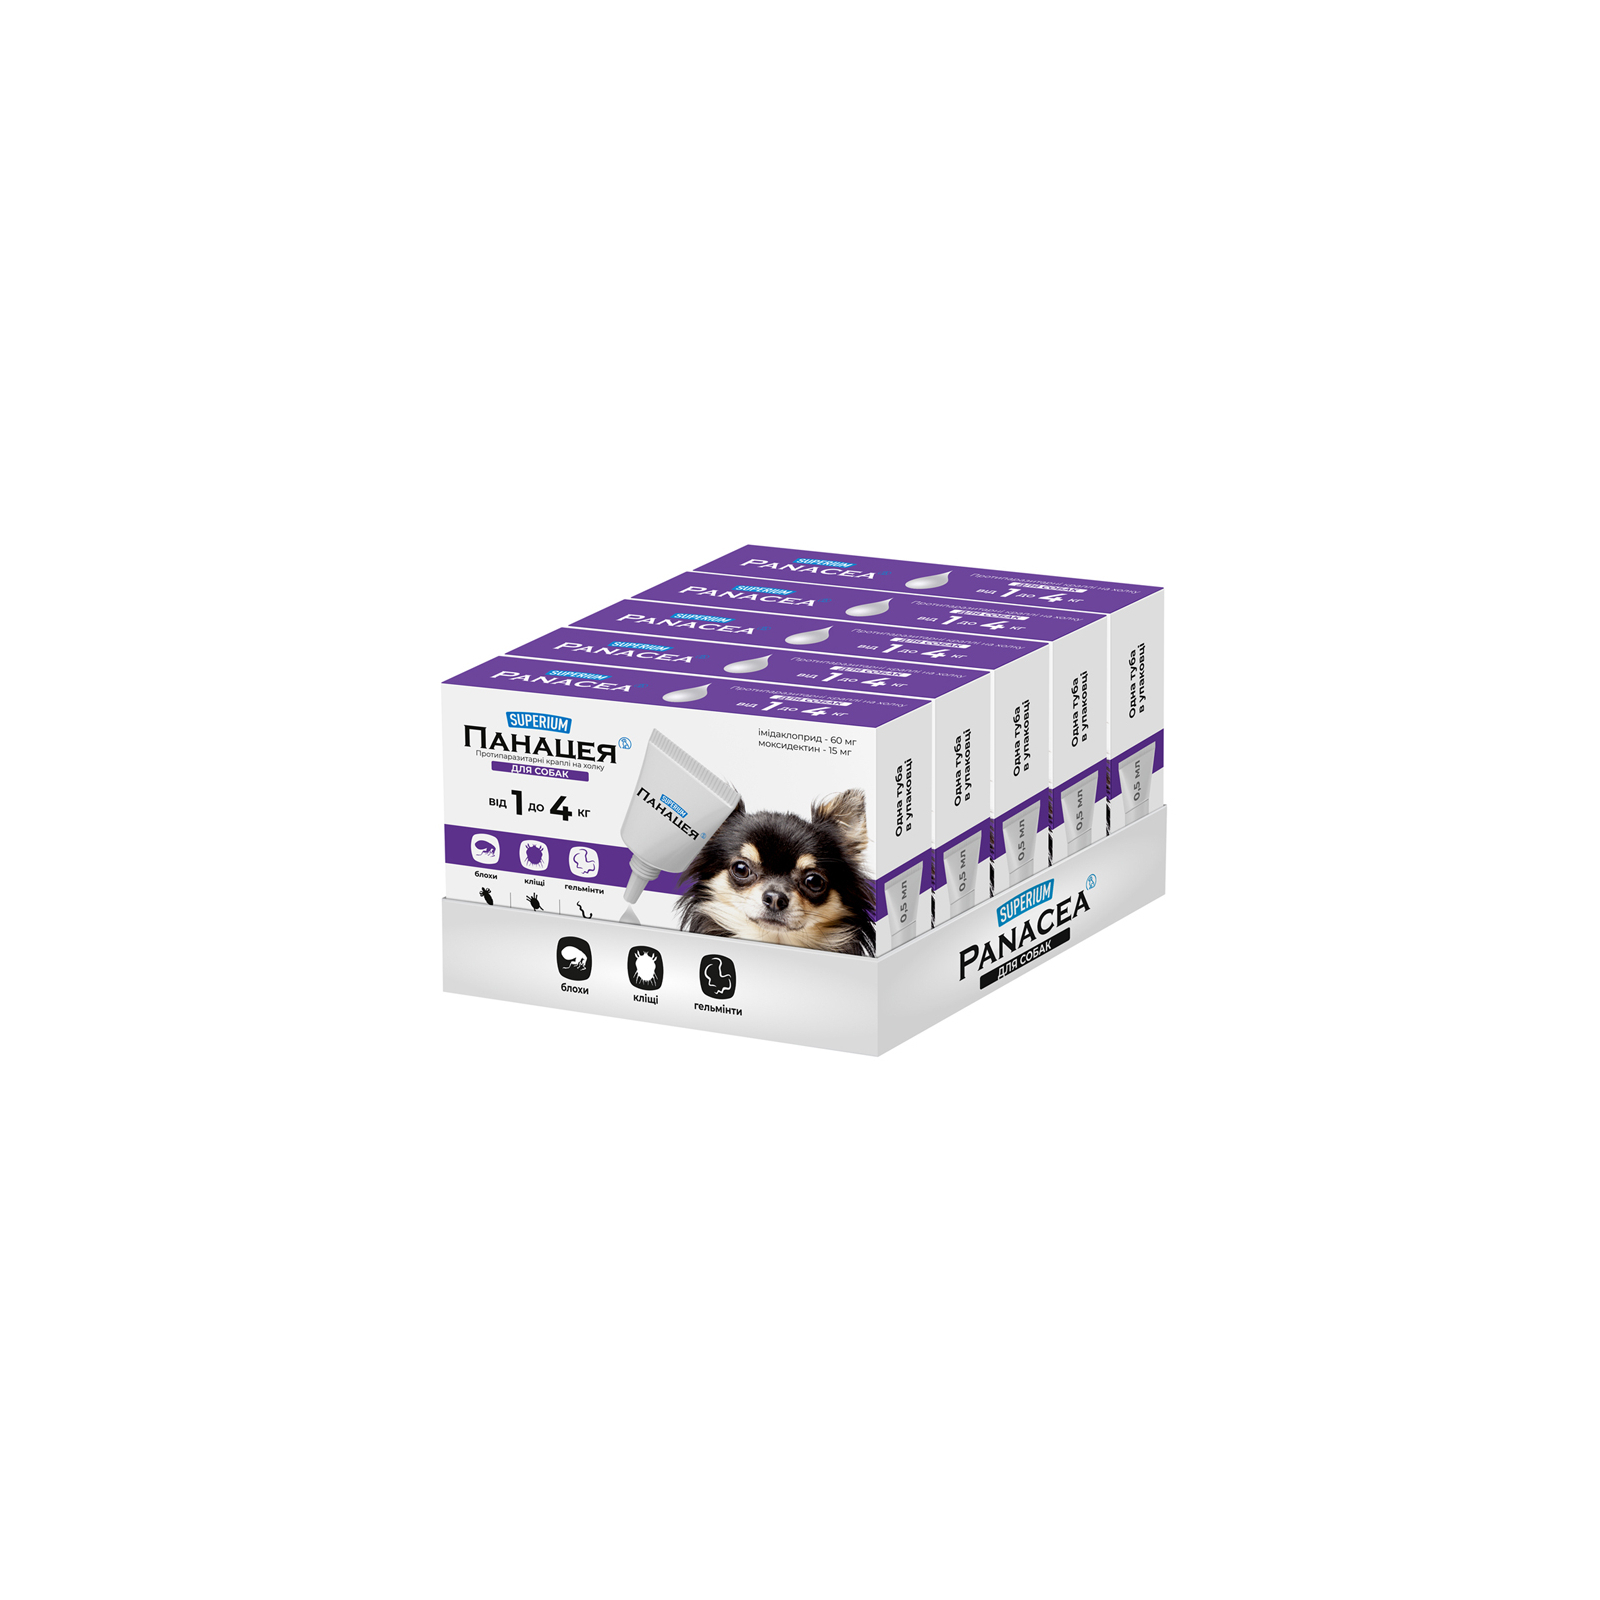 Капли для животных SUPERIUM Панацея Противоразитарные для собак 1-4 кг (9141) изображение 2